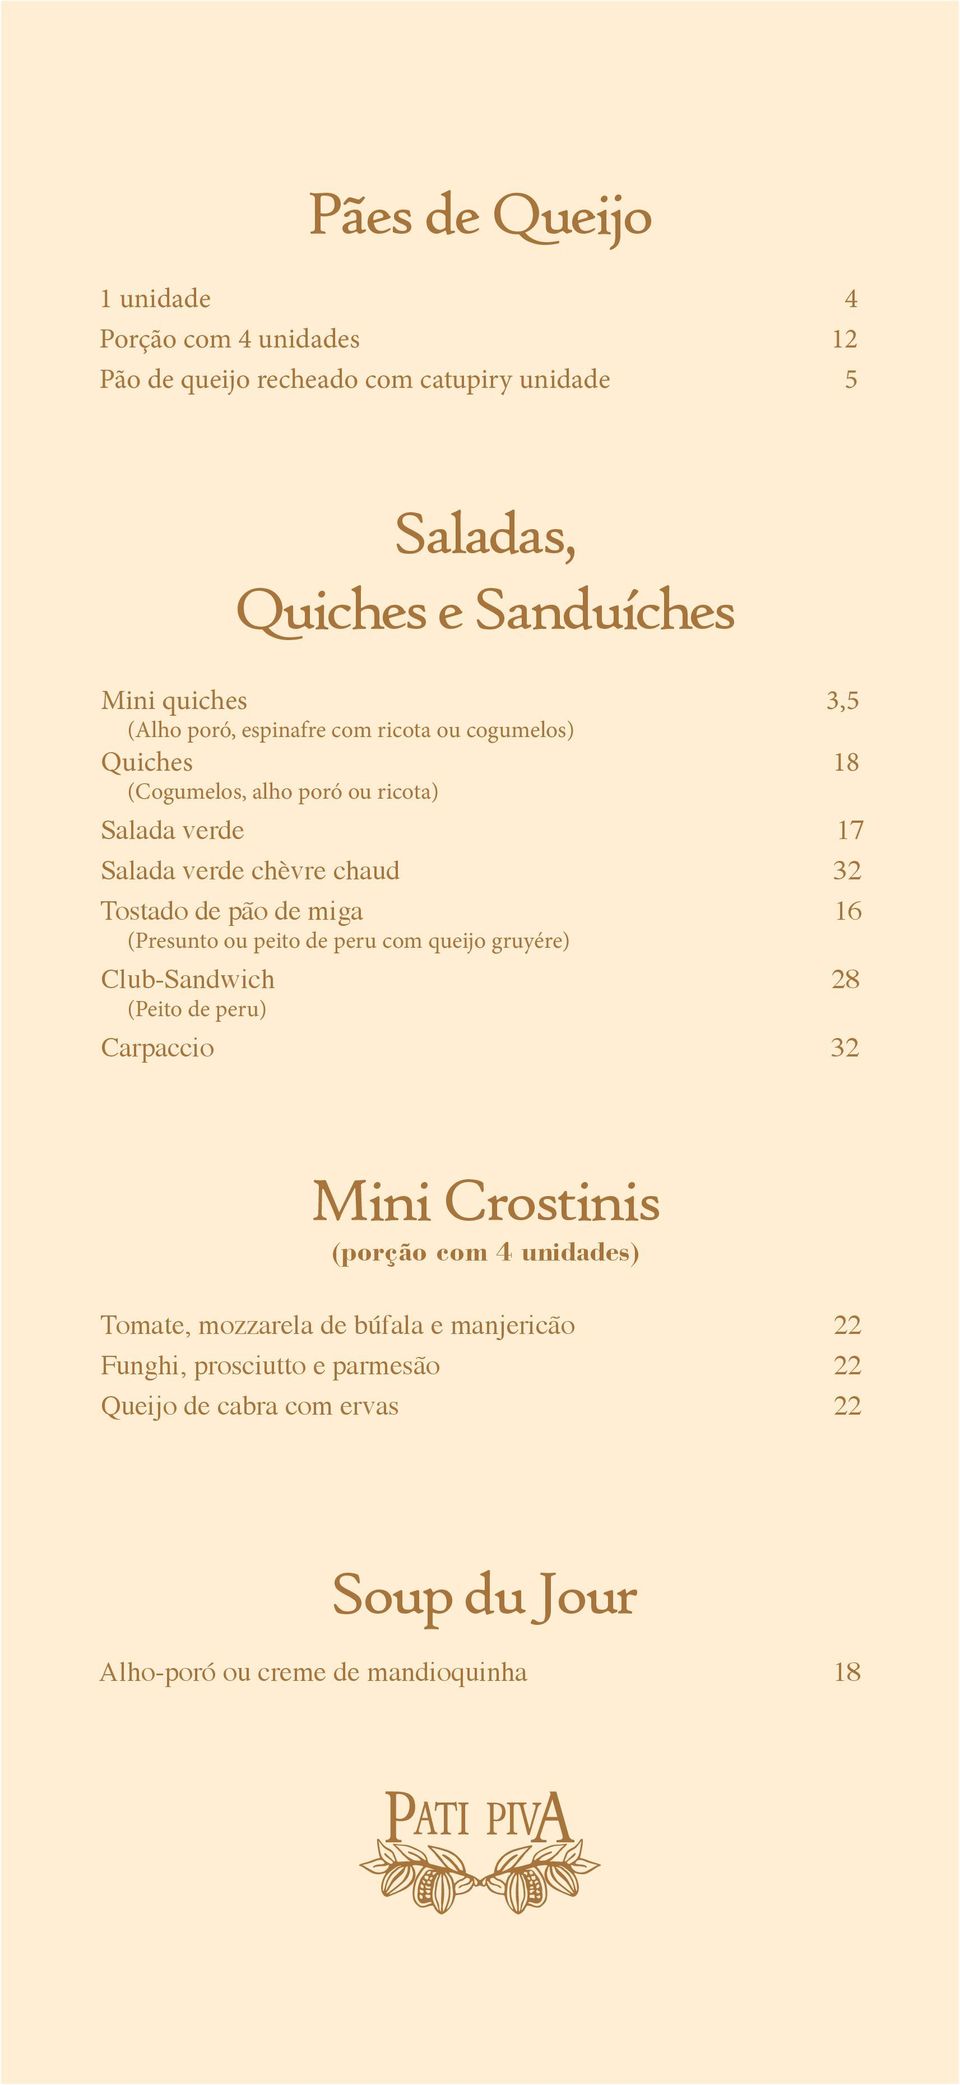 pão de miga 16 (Presunto ou peito de peru com queijo gruyére) Club-Sandwich 28 (Peito de peru) Carpaccio 32 Mini Crostinis (porção com 4 unidades)